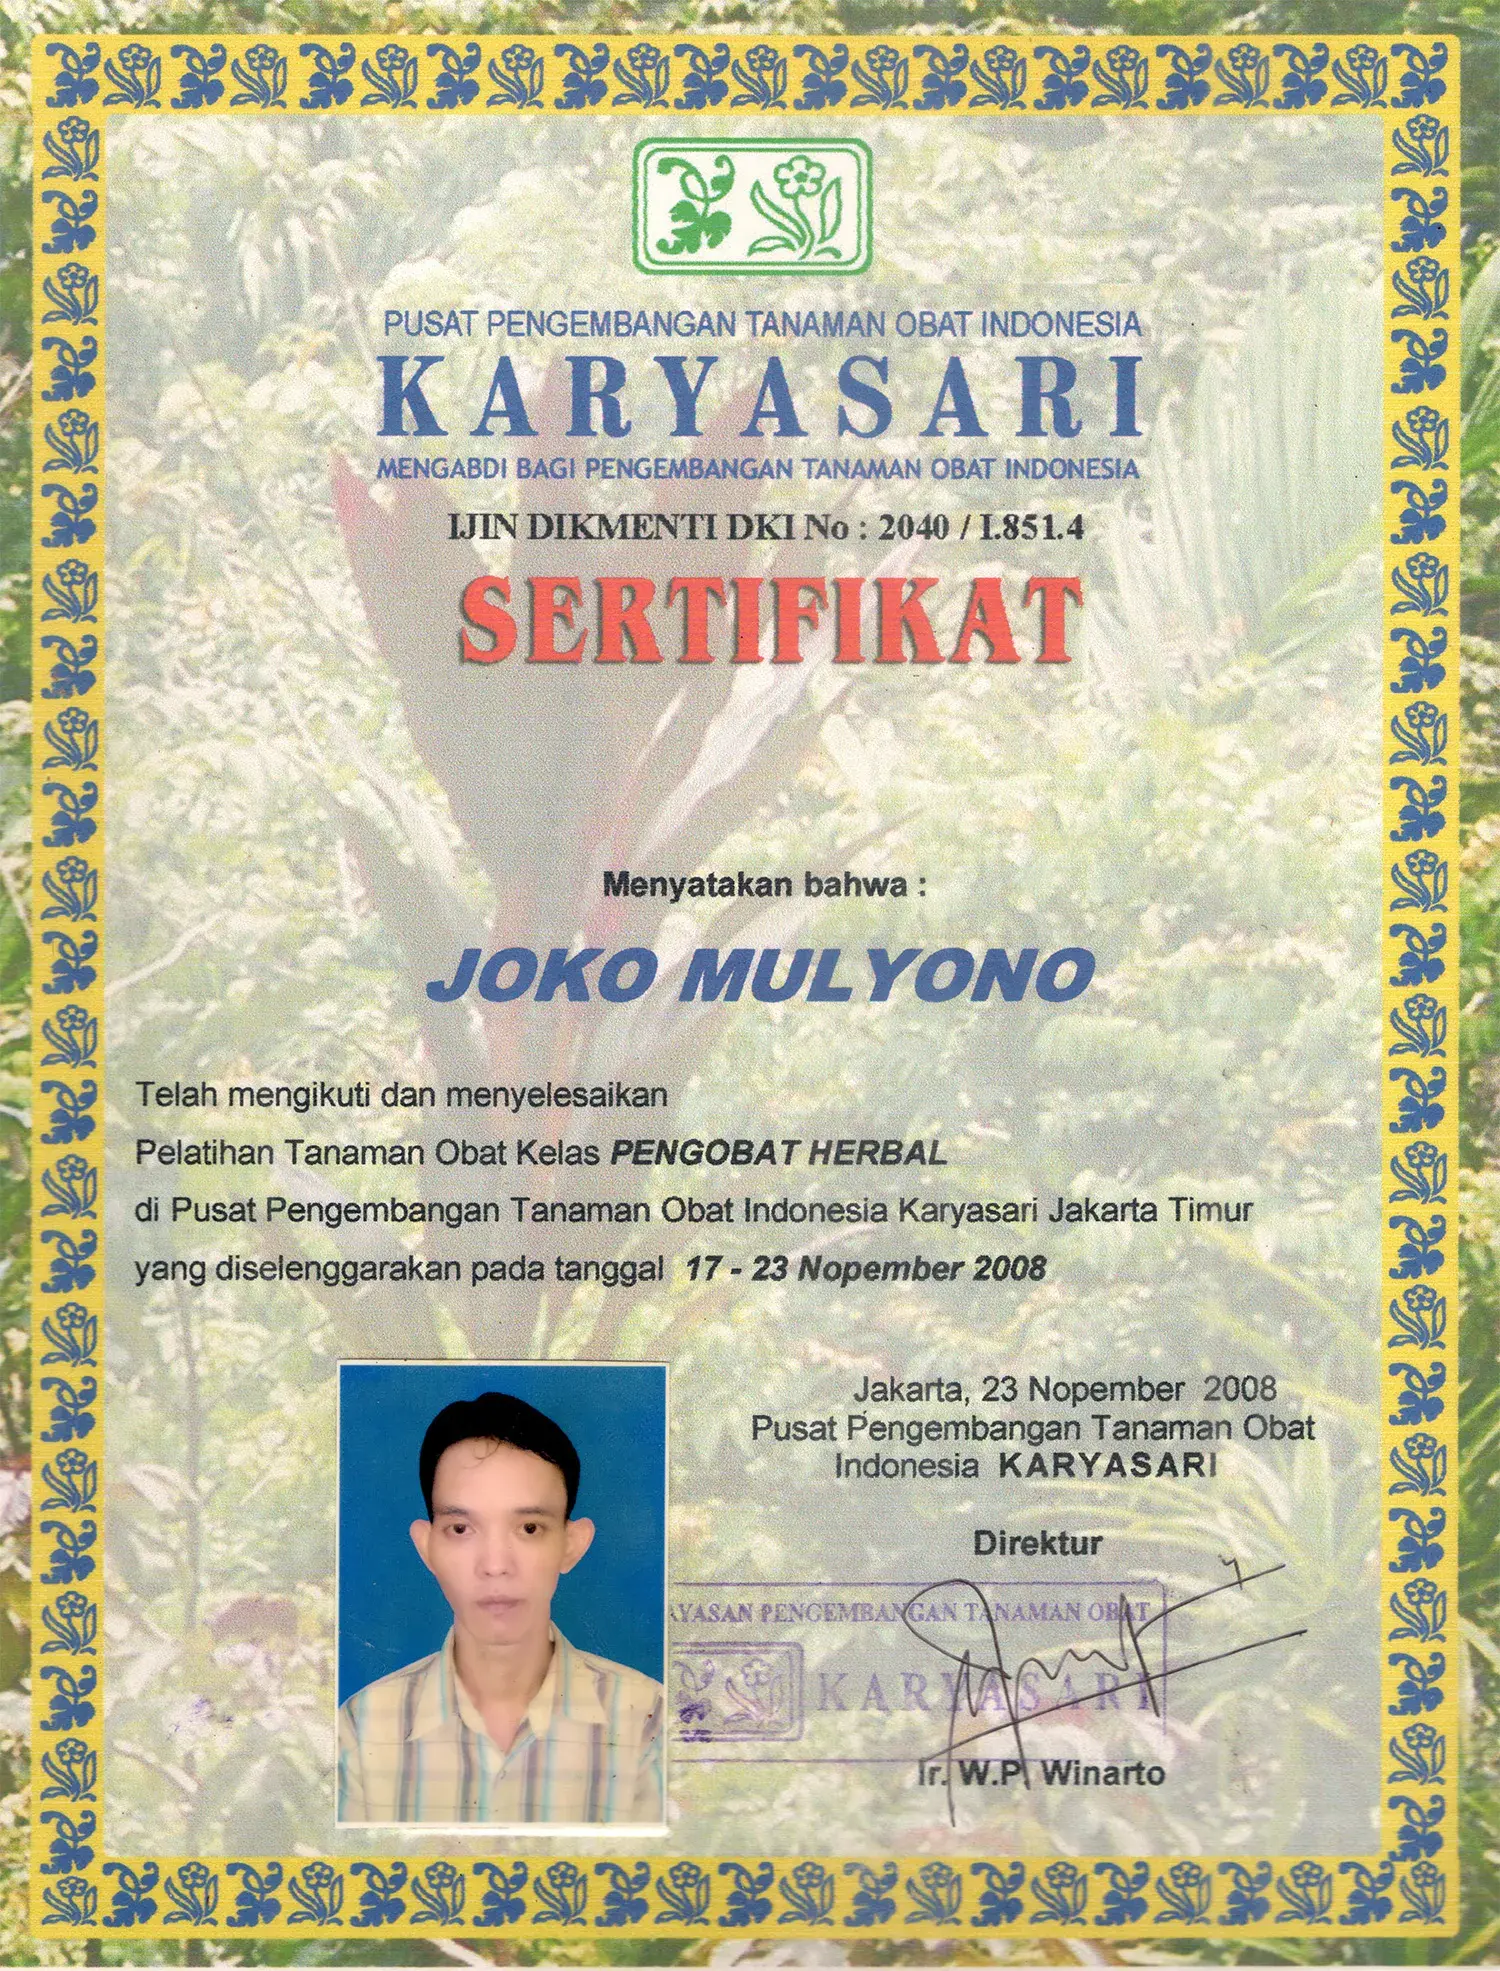 a sertifikat karyasari